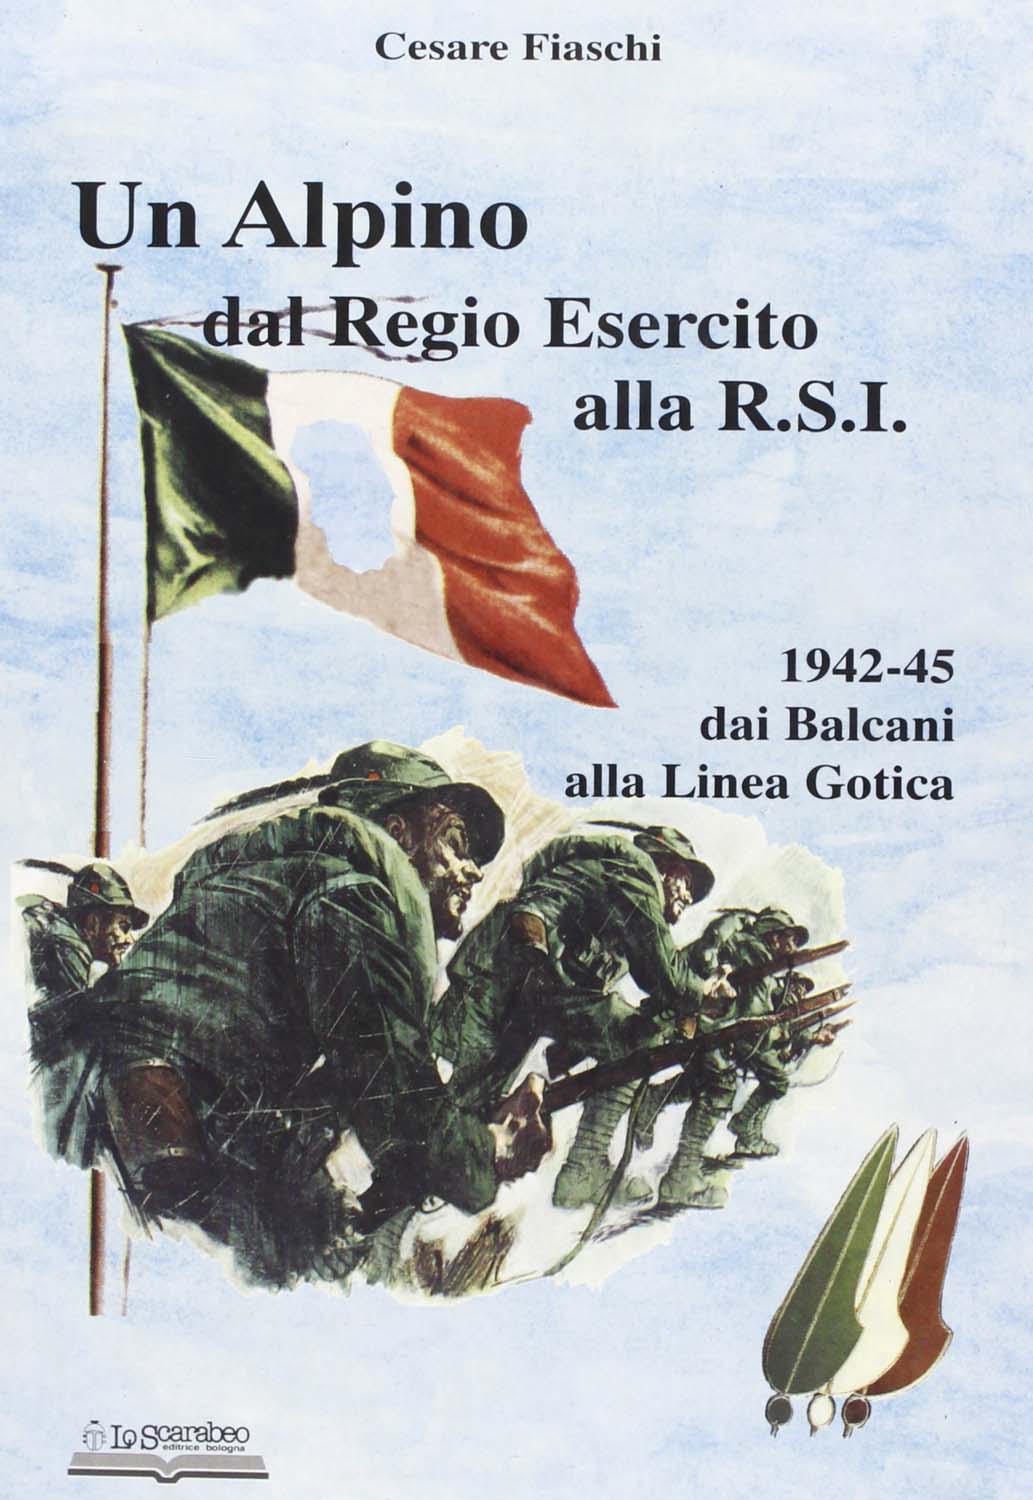 Libri Cesare Fiaschi - Un Alpino Dal Regio Esercito Alla R.S.I. NUOVO SIGILLATO, EDIZIONE DEL 22/08/2005 SUBITO DISPONIBILE